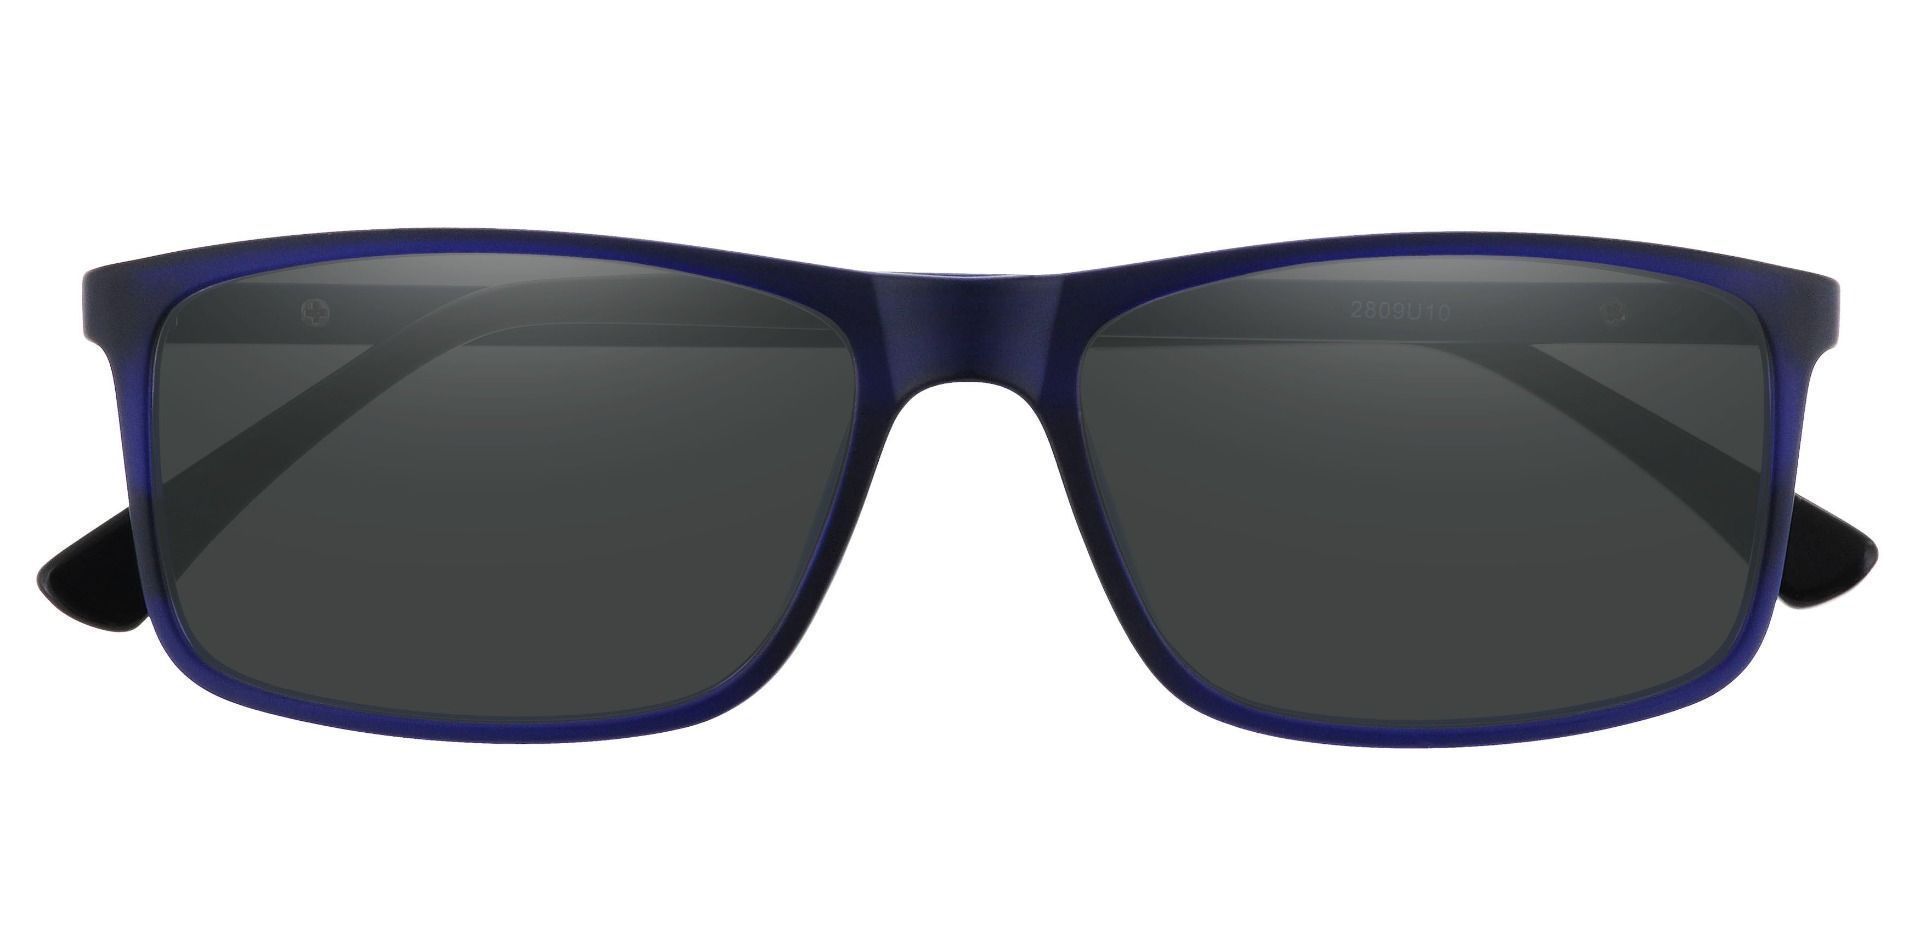 Montana Rectangle Prescription Sunglasses -  Blue Frame With Gray Lenses